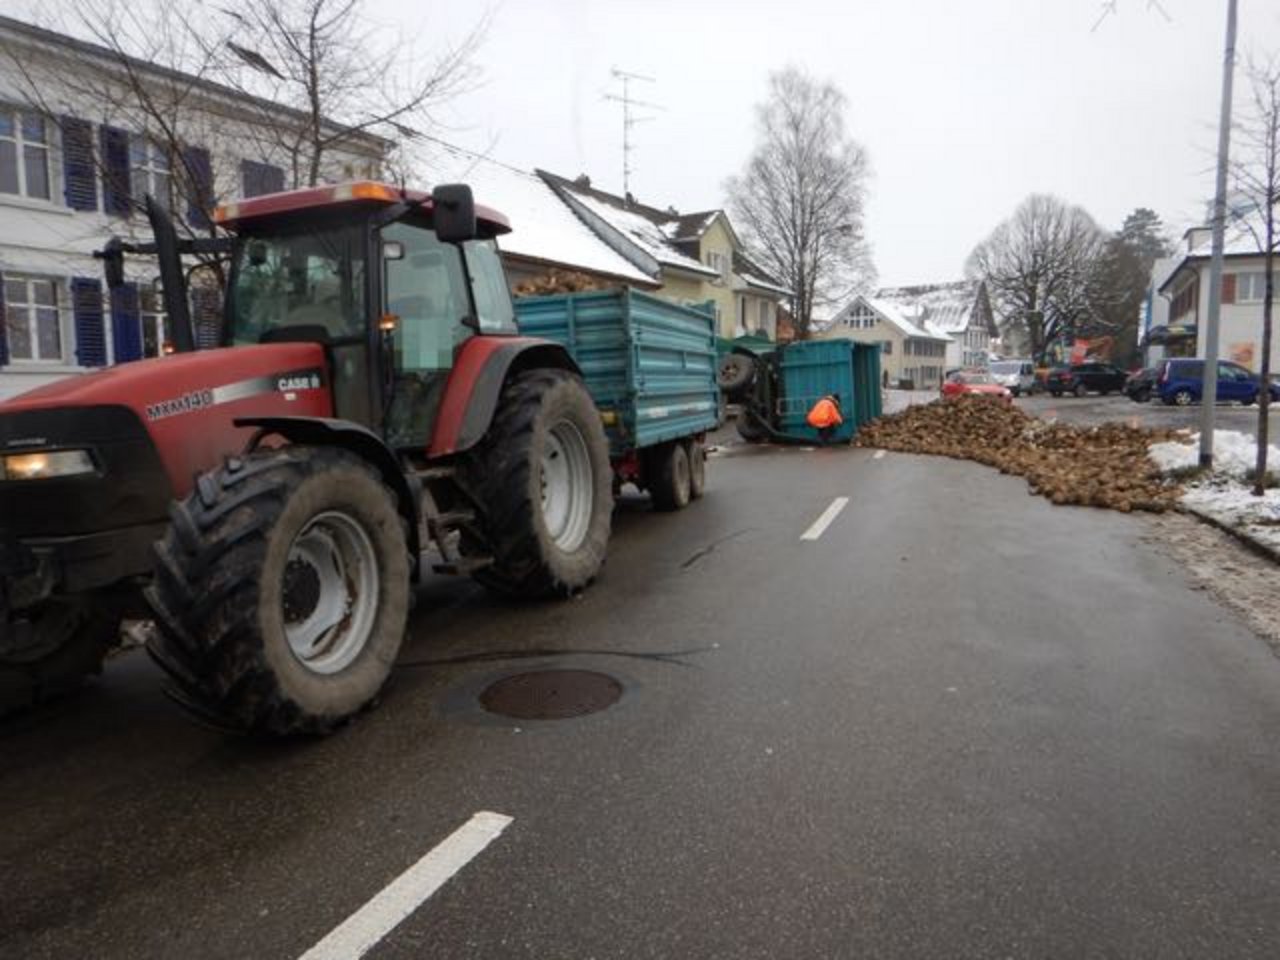 Der zweite Anhänger der Fahrzeugkombination kippte. Laut Kantonspolizei Thurgau dürfte es an einem Defekt an der Anhängerkupplung gelegen haben. (Bild Kapo TG)